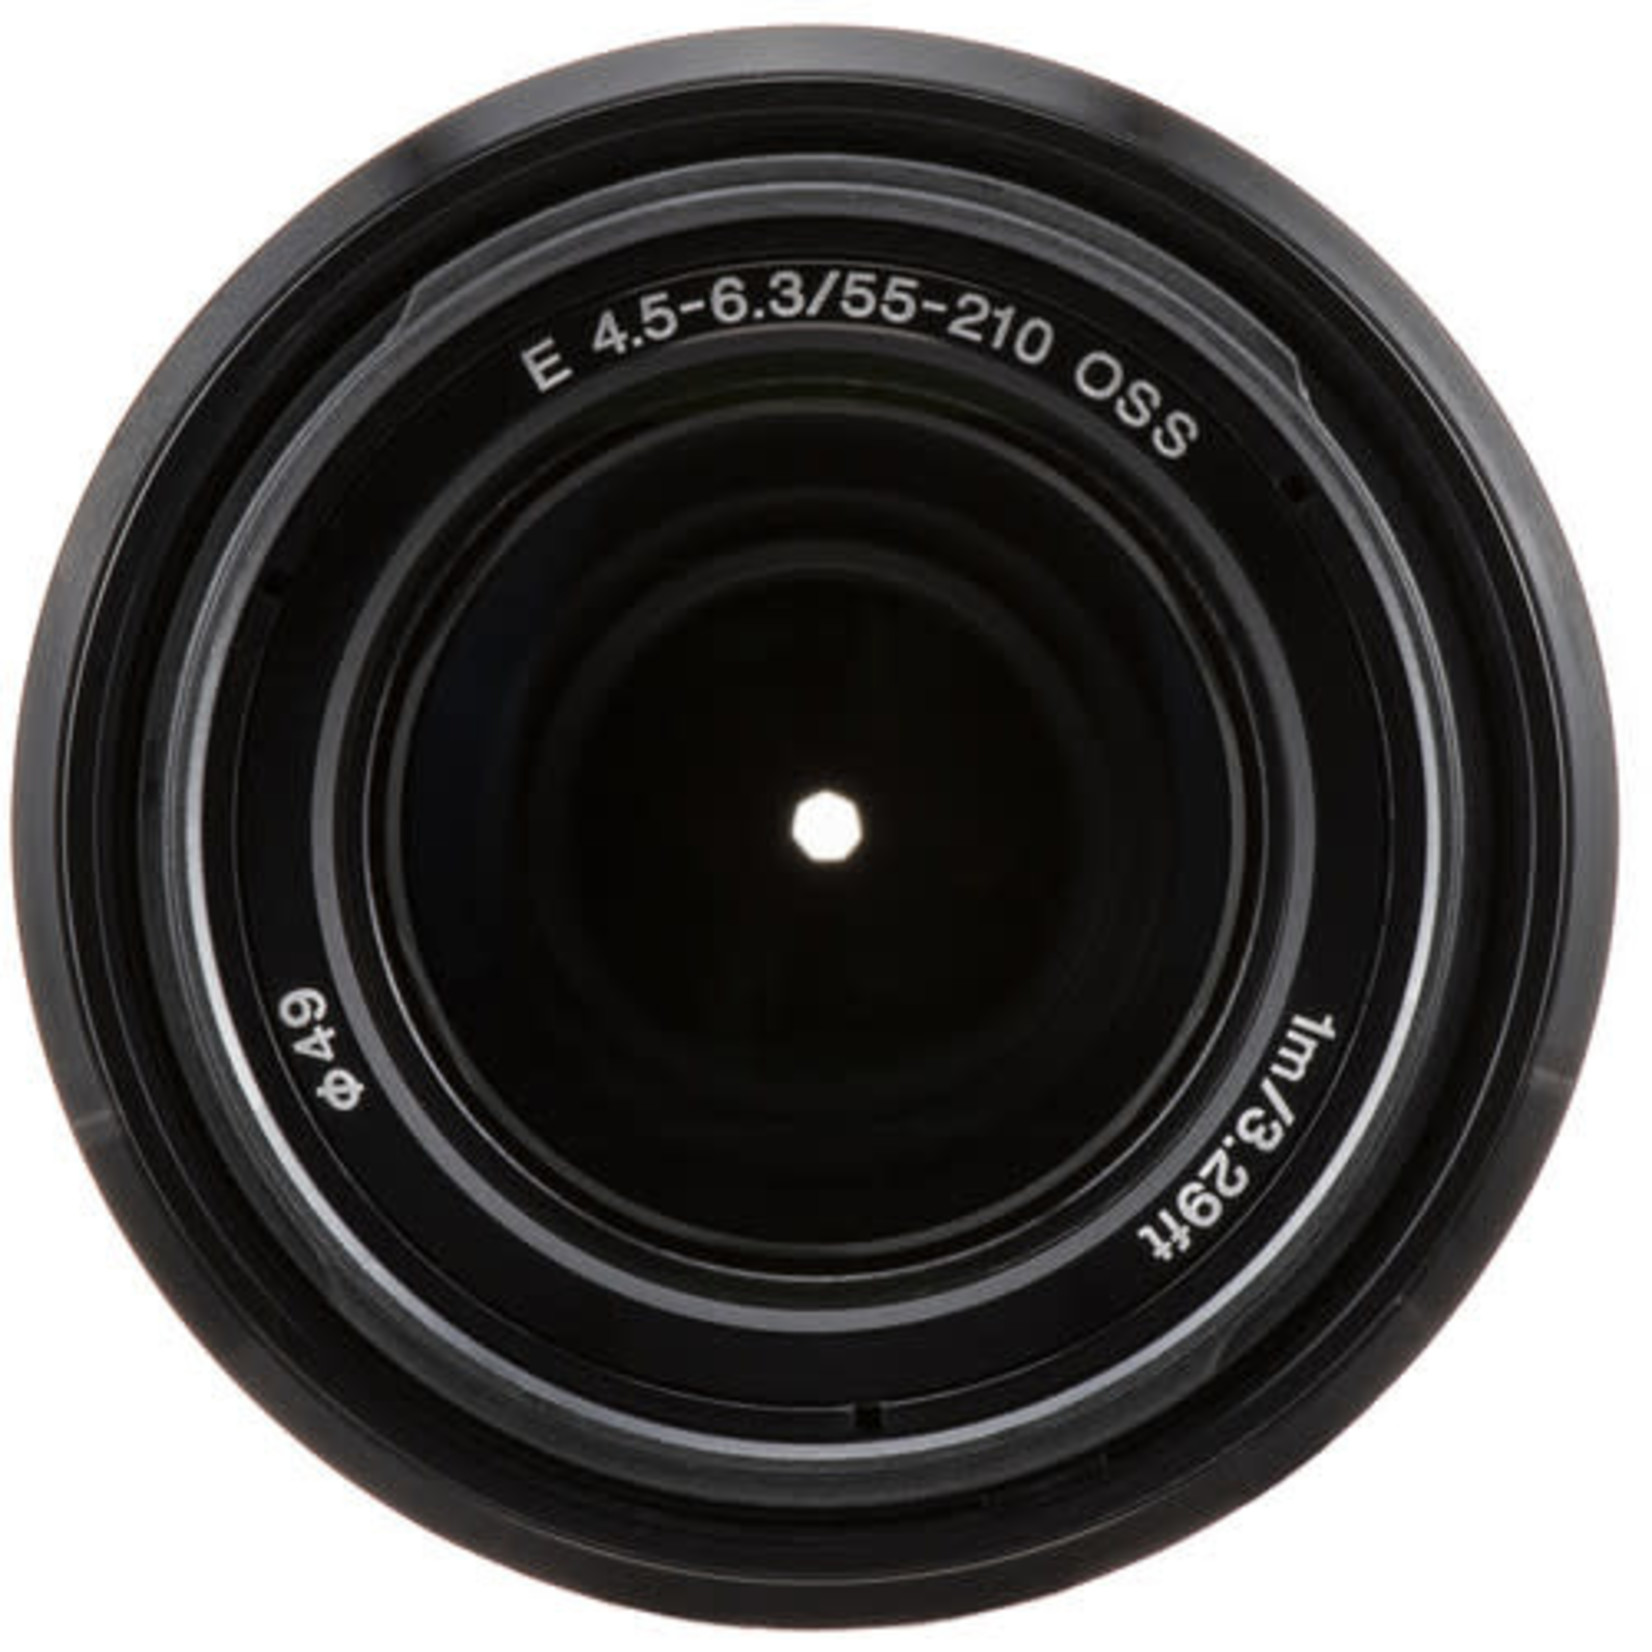 レンズ(ズーム)SONY望遠レンズ E 55-210mm F4.5-6.3 OSS - レンズ(ズーム)